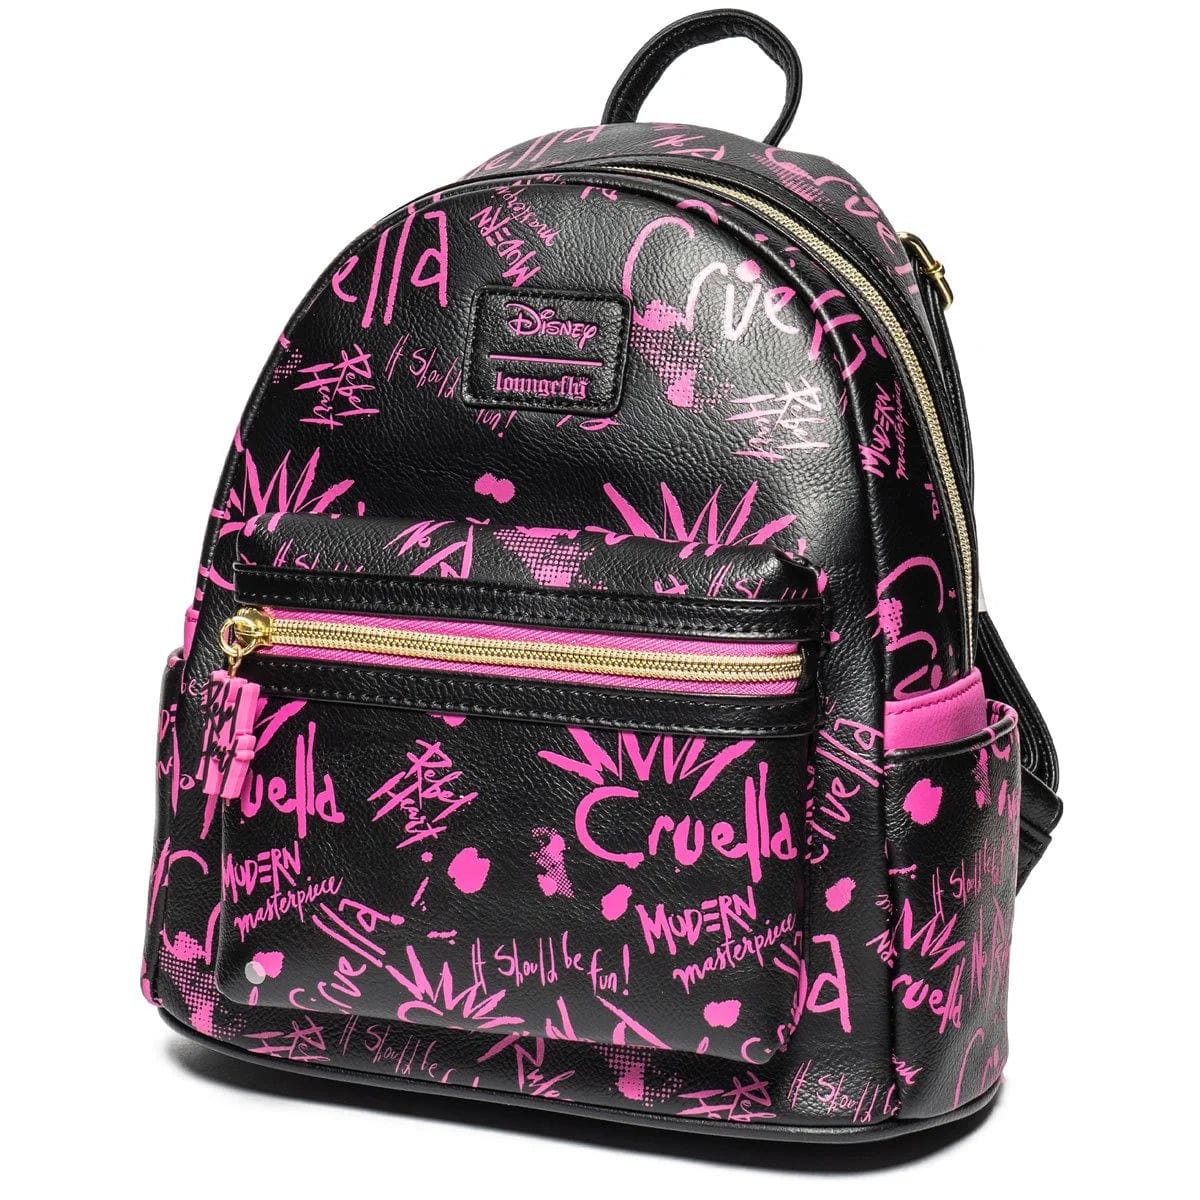 Cruella Graffiti Mini-Backpack